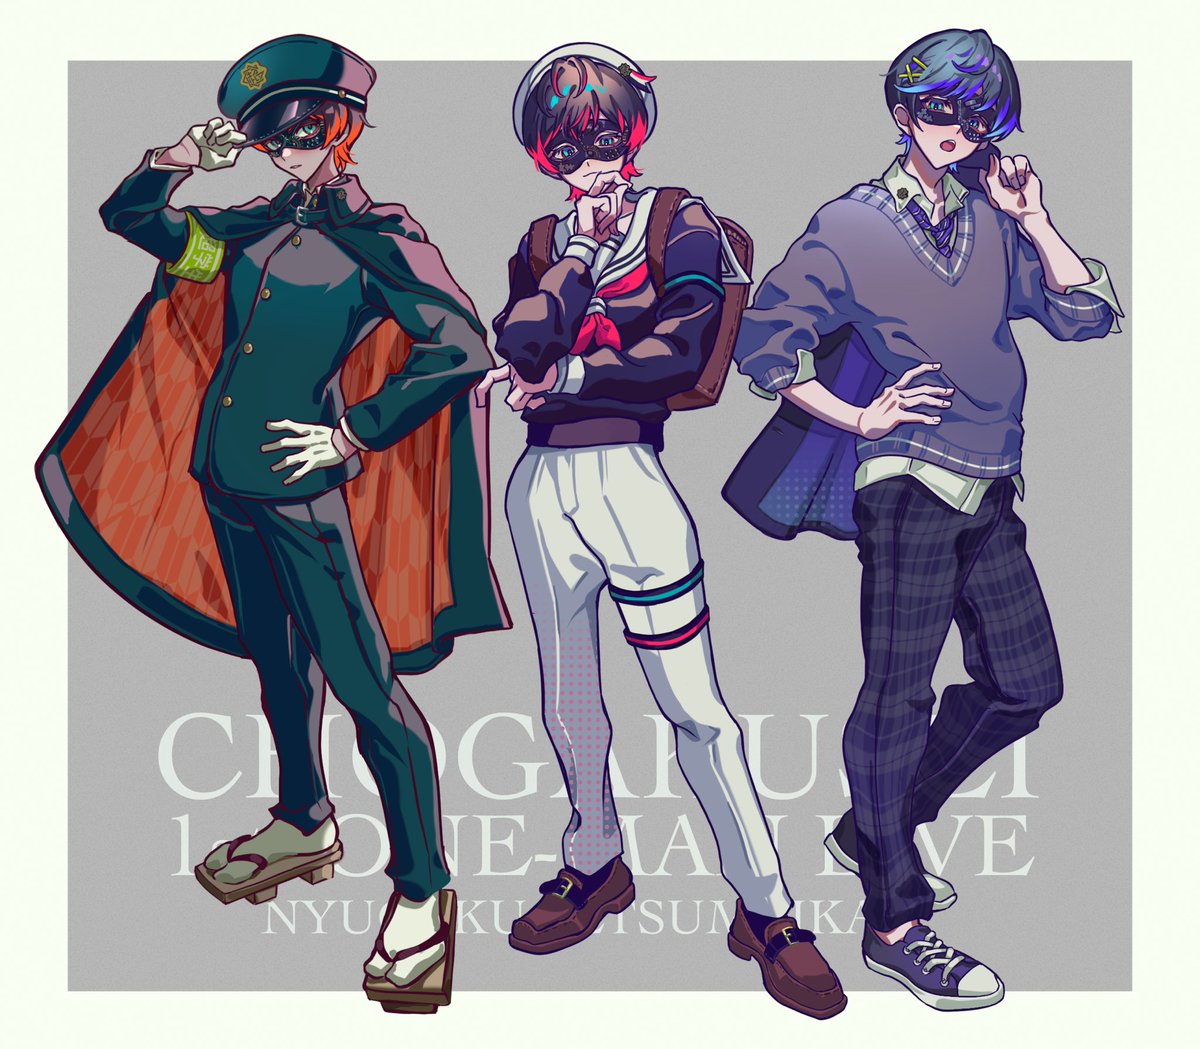 3boys pants multiple boys male focus hat school uniform blue hair  illustration images